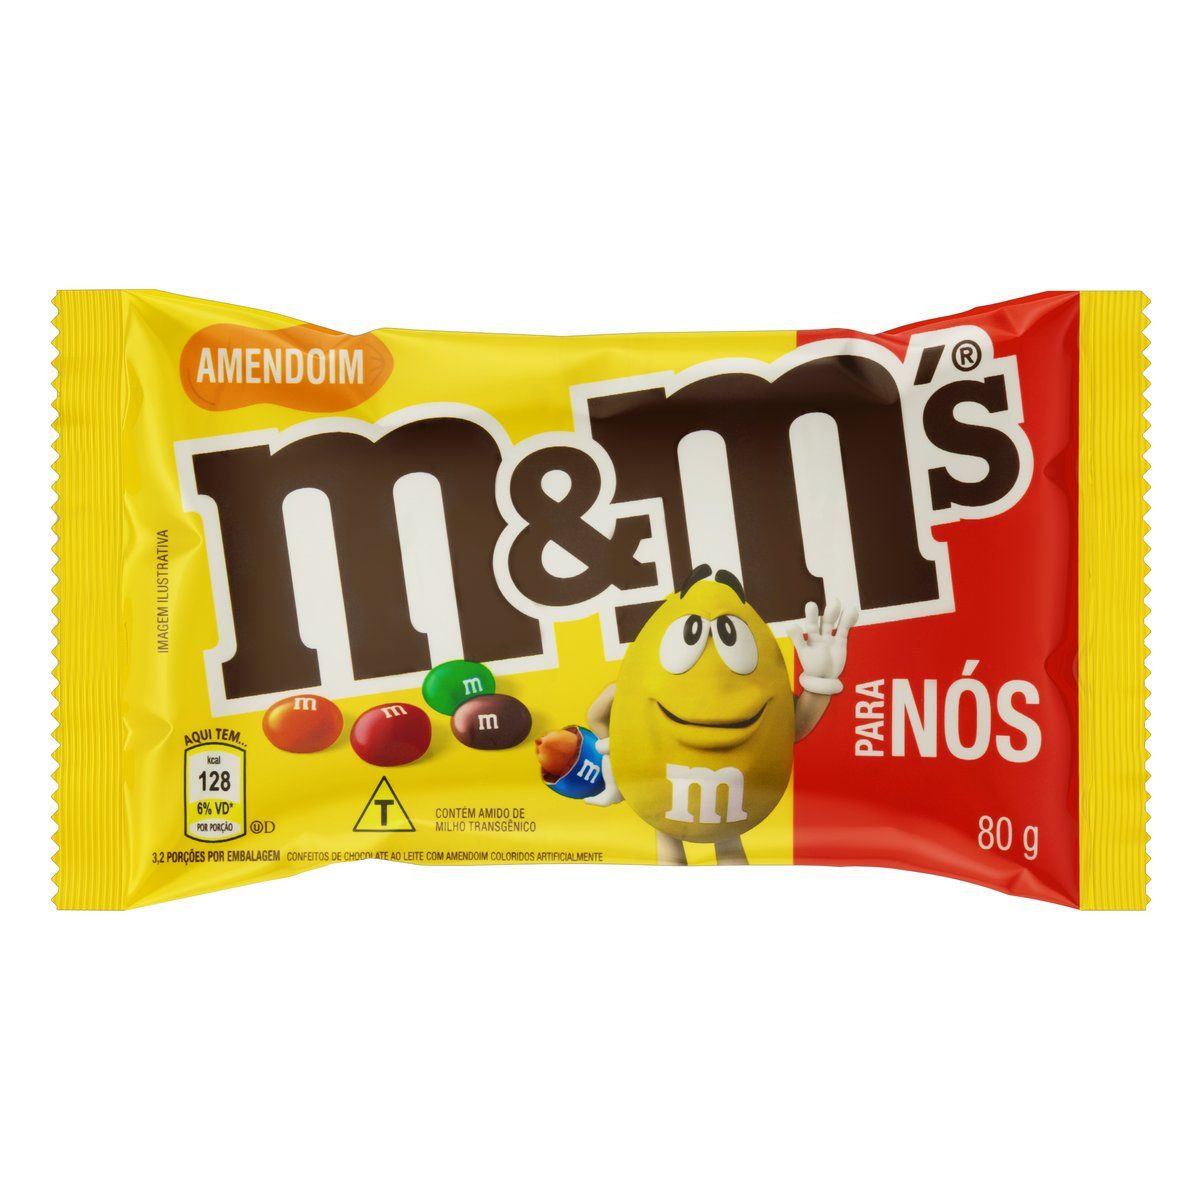 Confeito de Chocolate ao Leite com Amendoim M&M's para Nós Pacote 80g